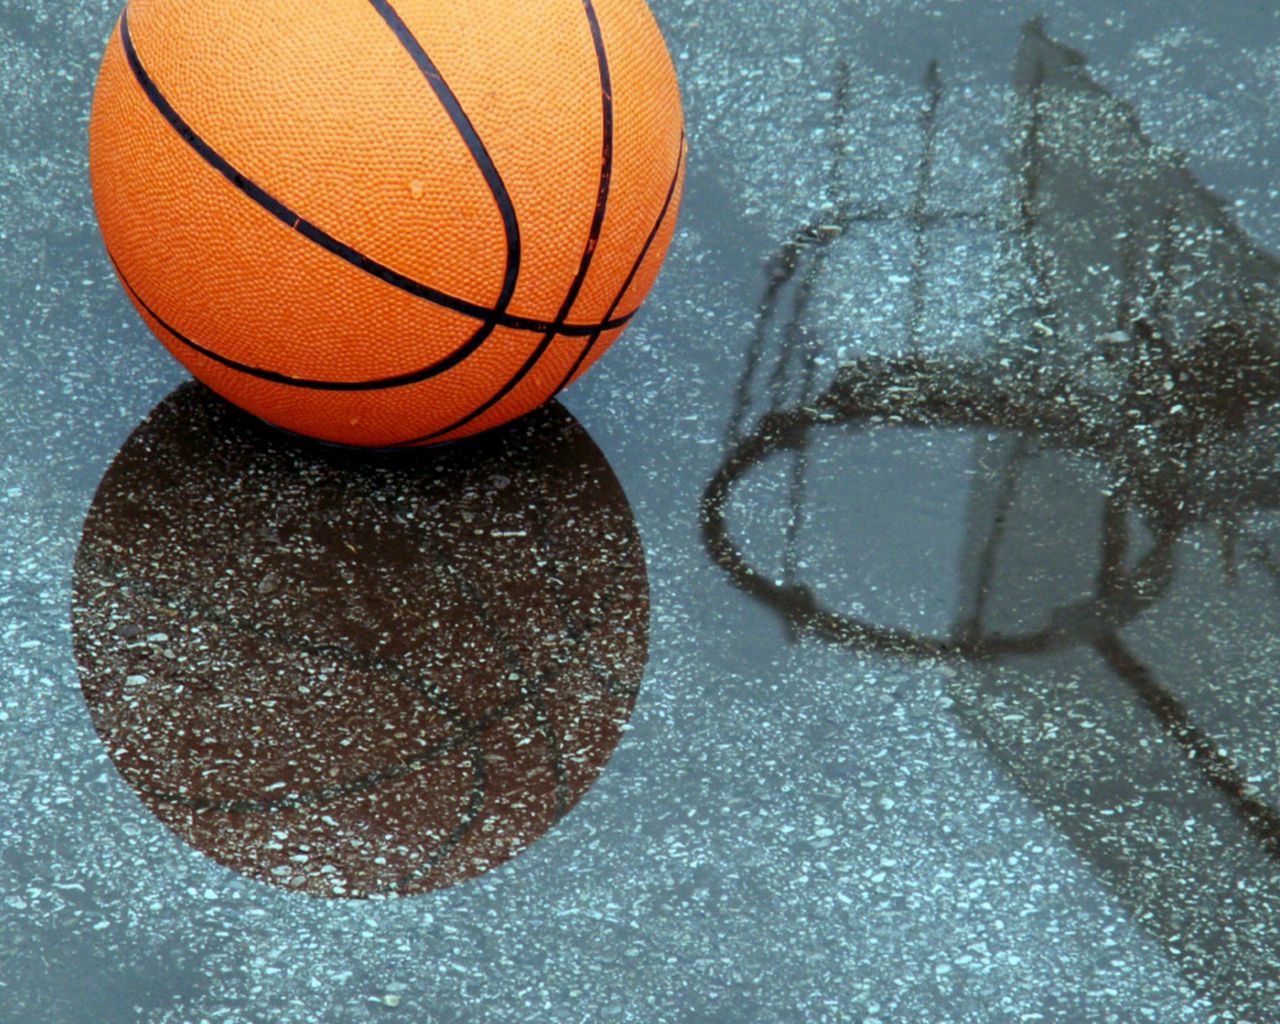 Баскетбольный мяч в кольце